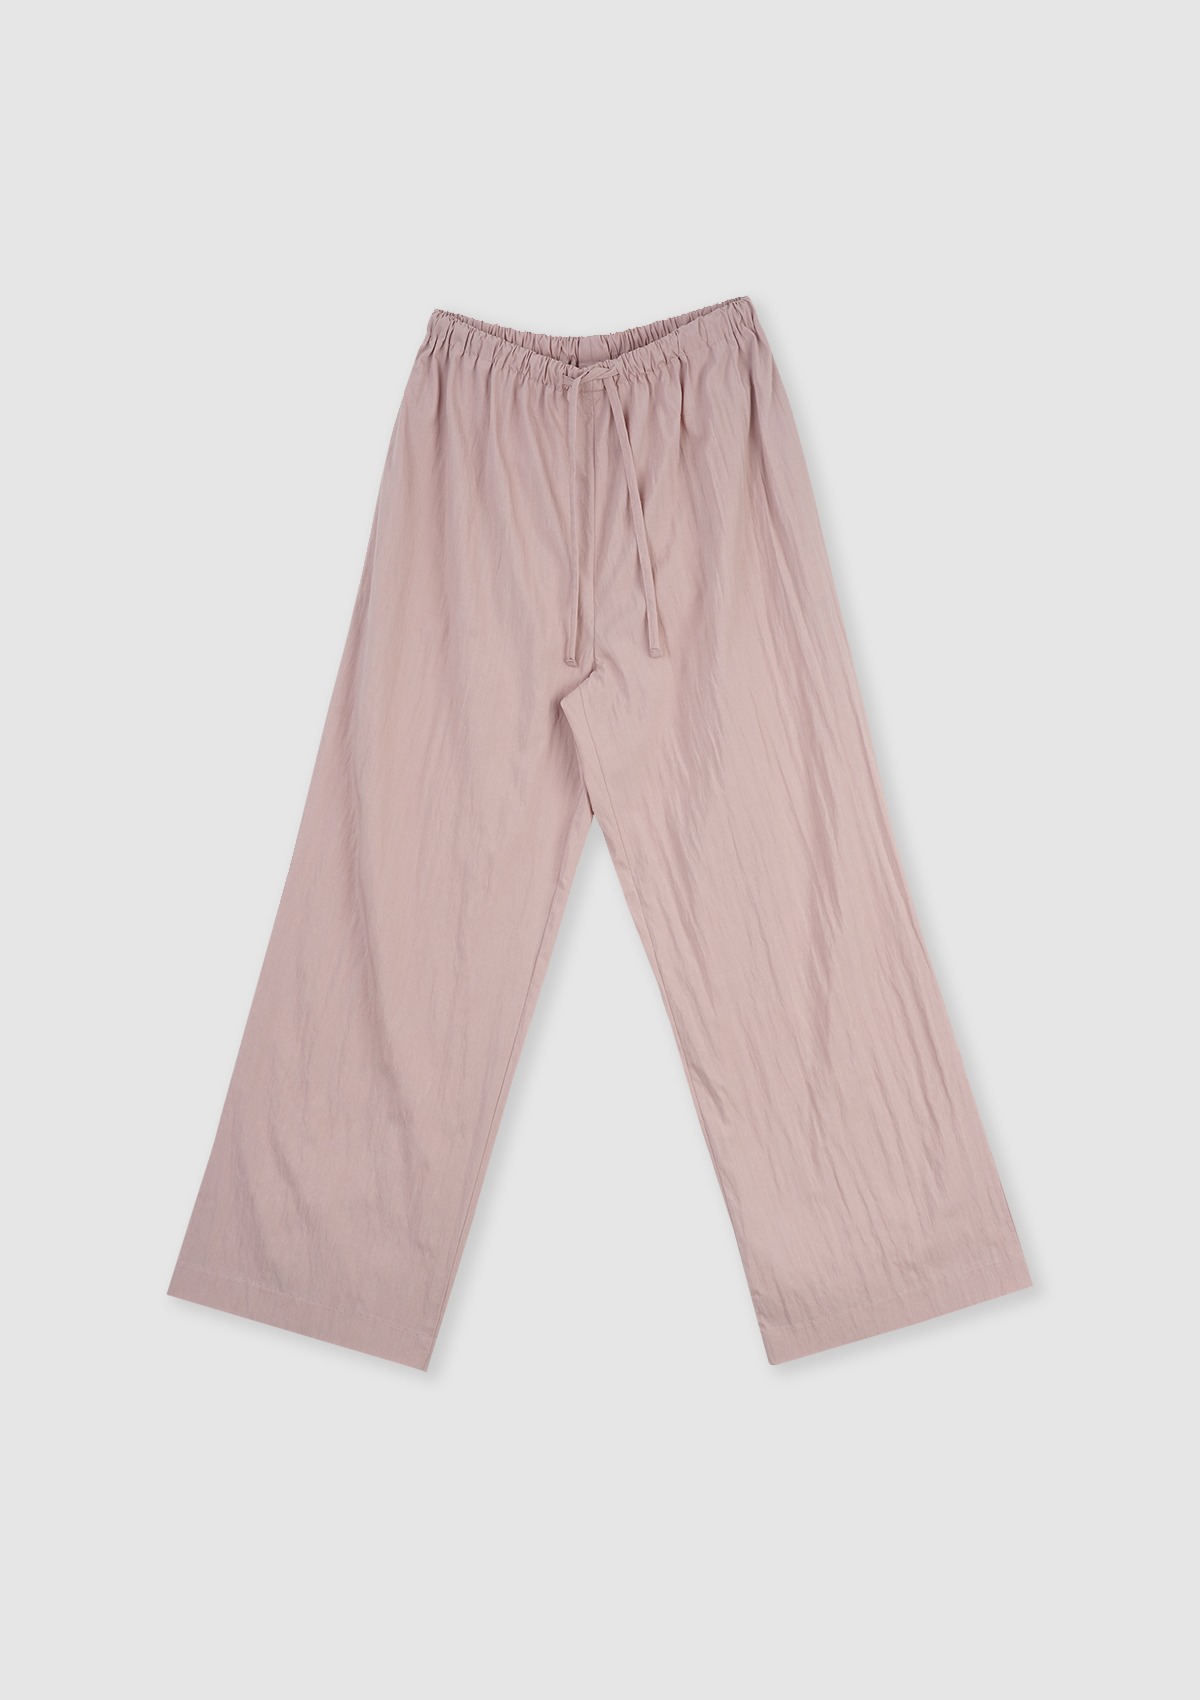 Free pants (Pink)